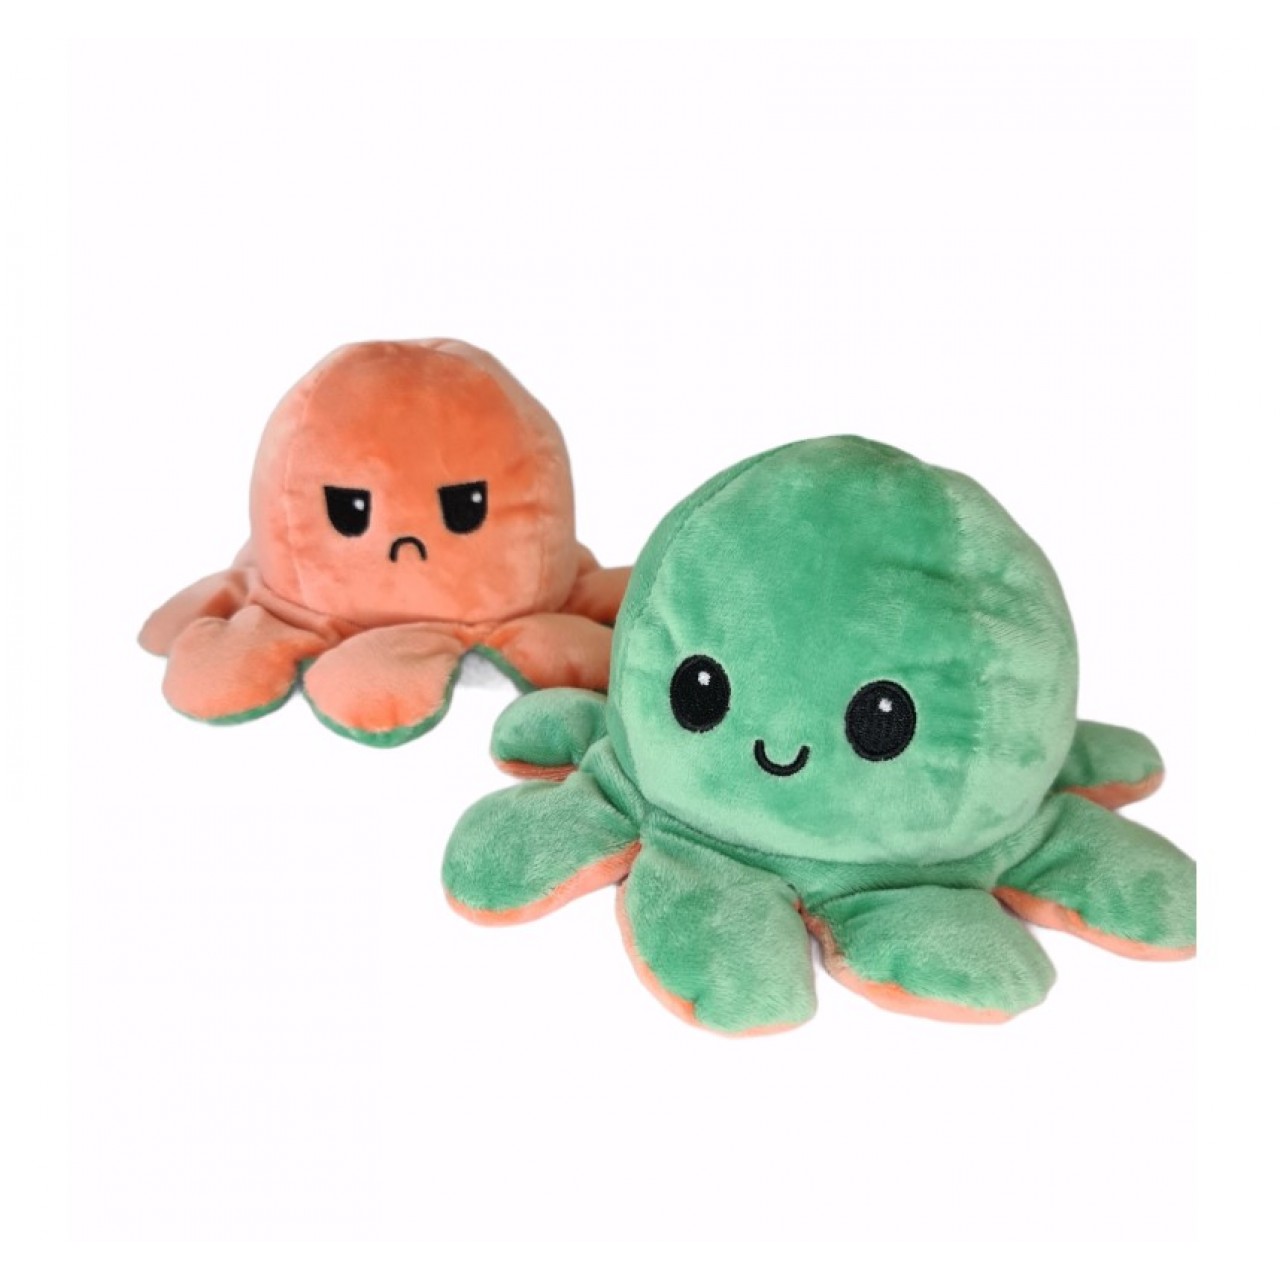 Χταπόδι διπλής όψης λούτρινο emotional reversible octopus plush 12 εκ - 5263 - Πράσινο / Πορτοκαλί